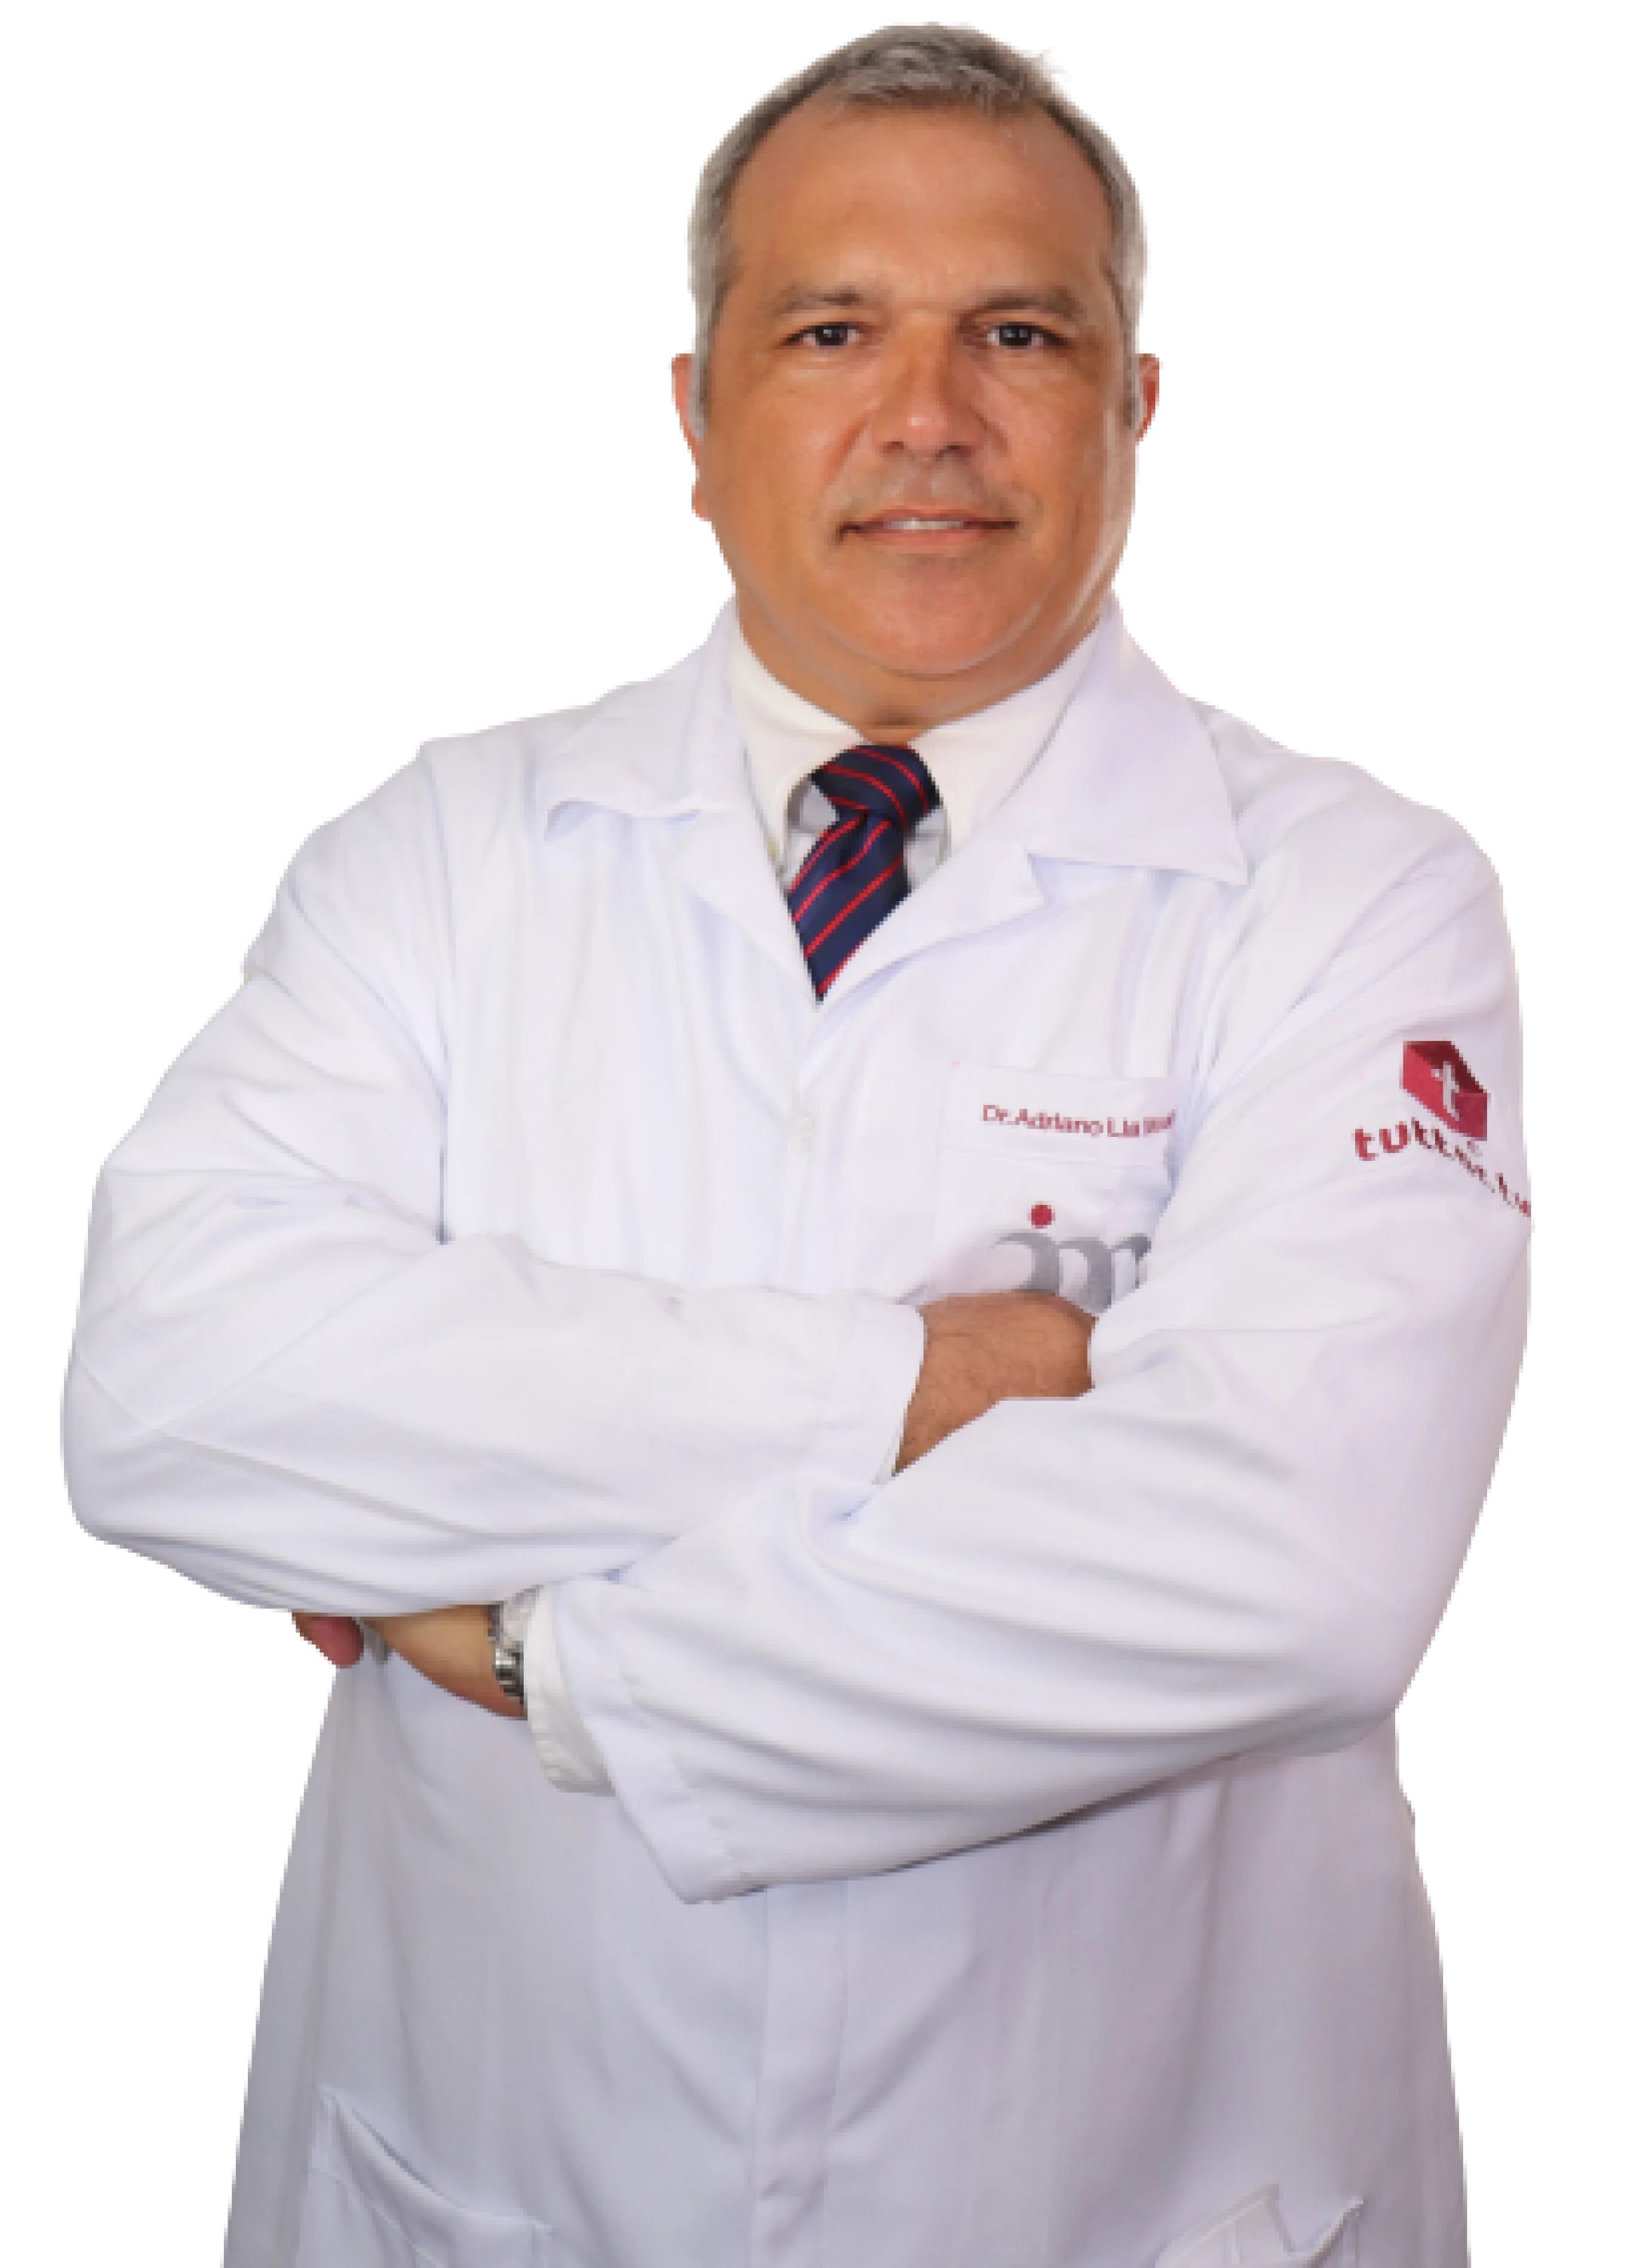 Profe. Dr. Adriano Mondelli